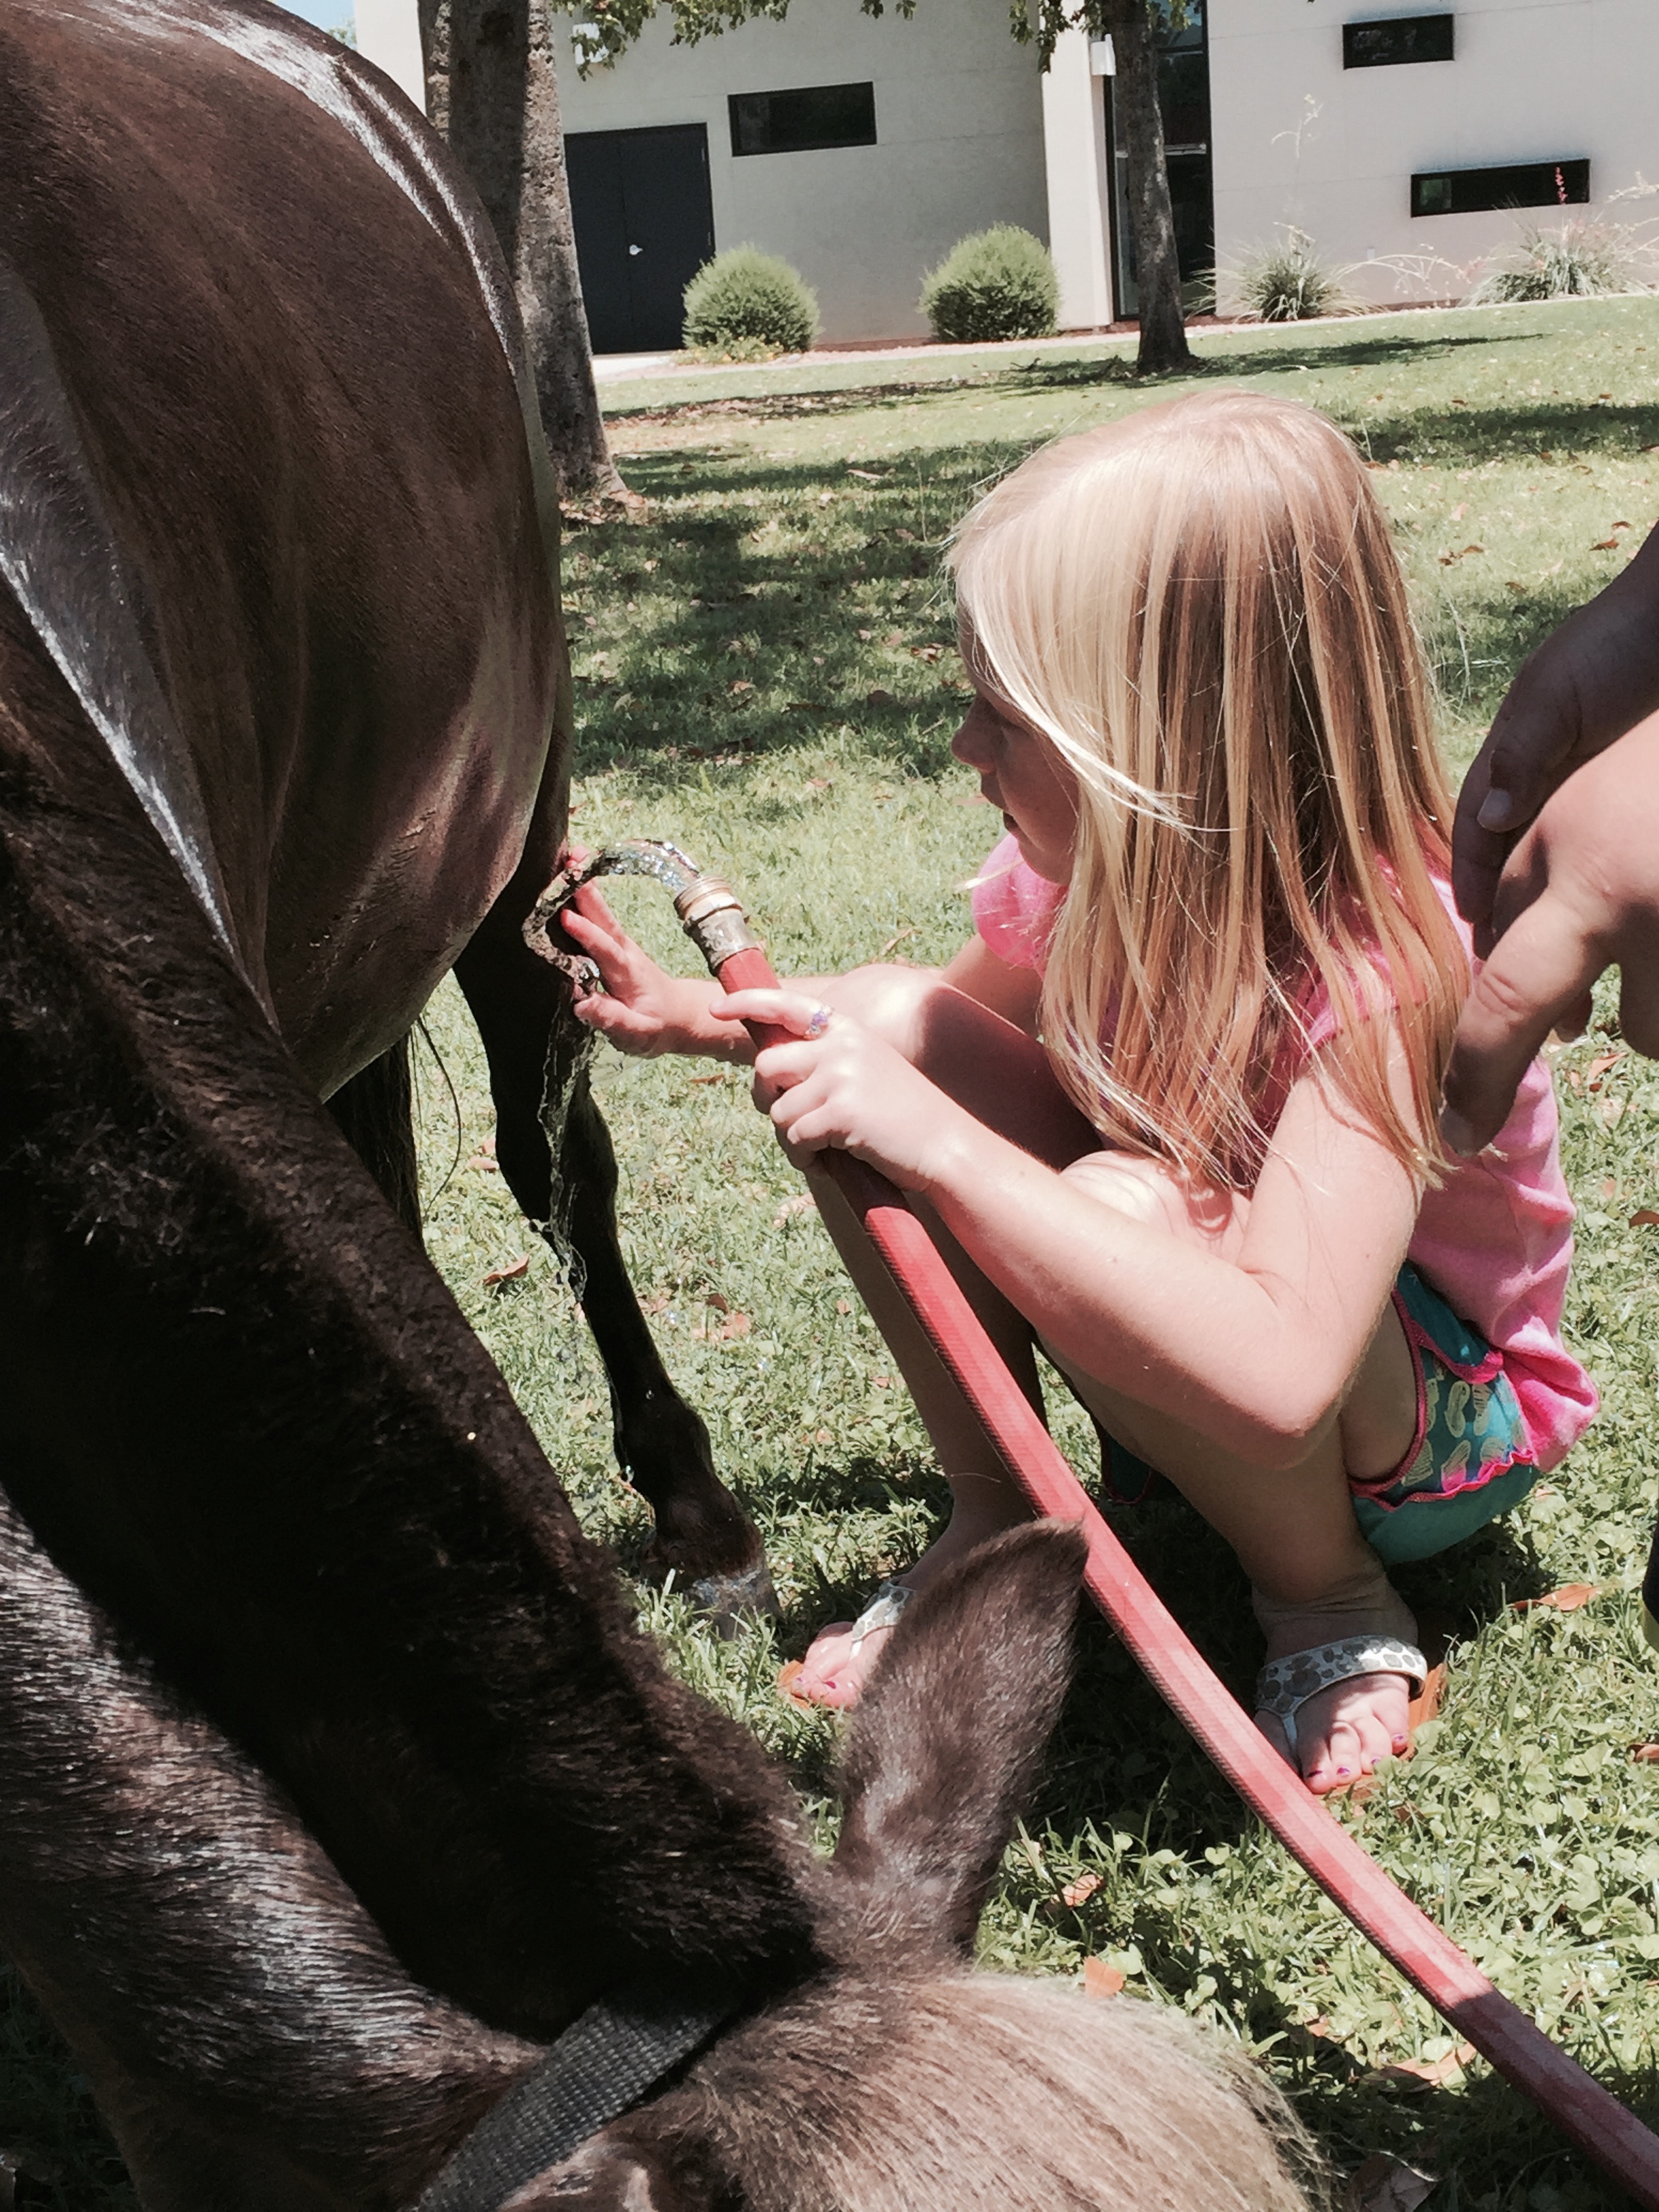 Kid gently hosing horse